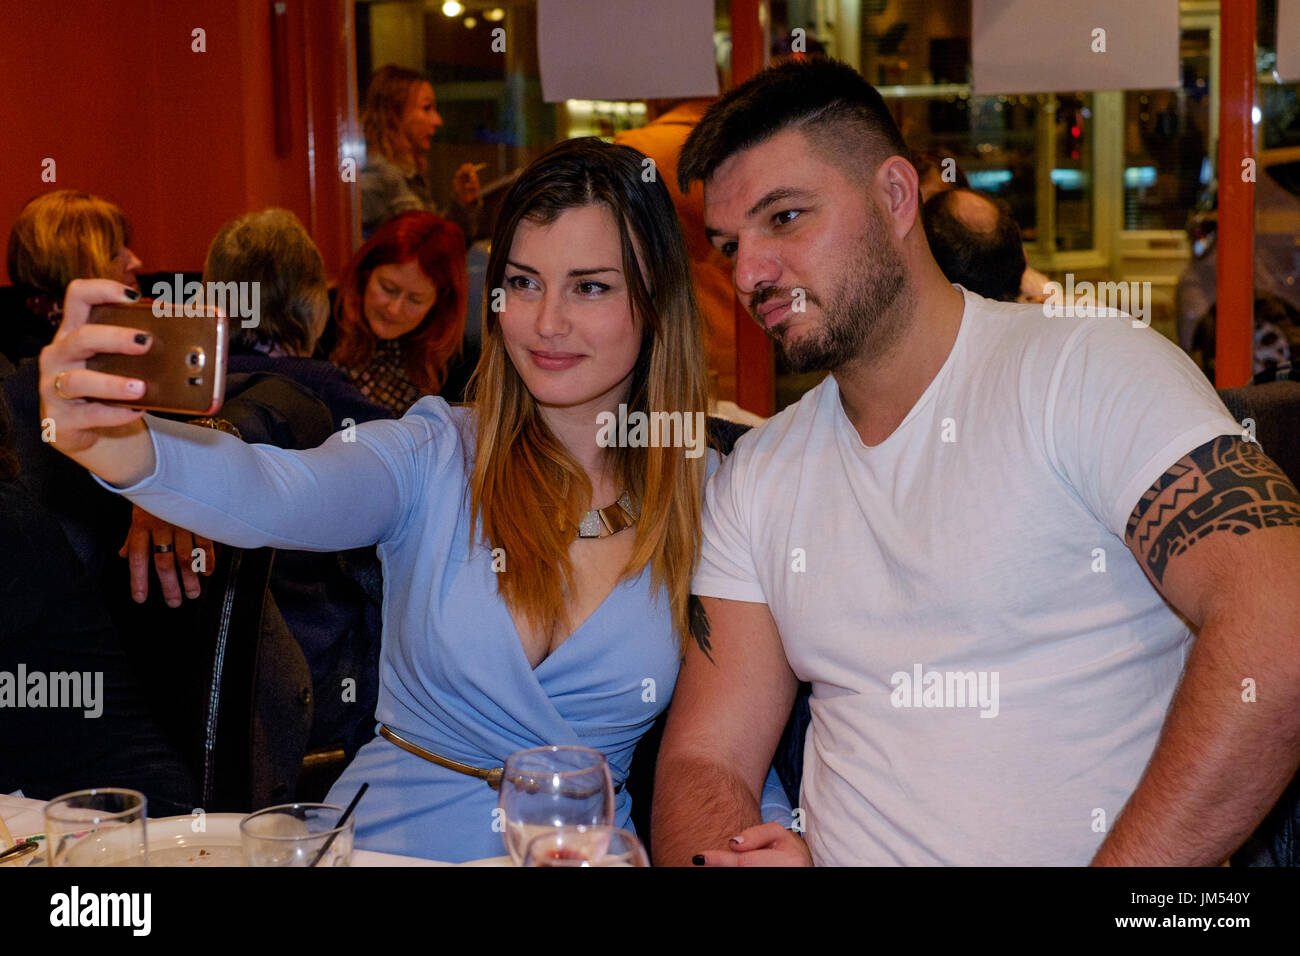 Junge hübsche Frau mit einem Smartphone eine selfy sich und Ihre männlichen Partner in einem Restaurant zu nehmen Stockfoto